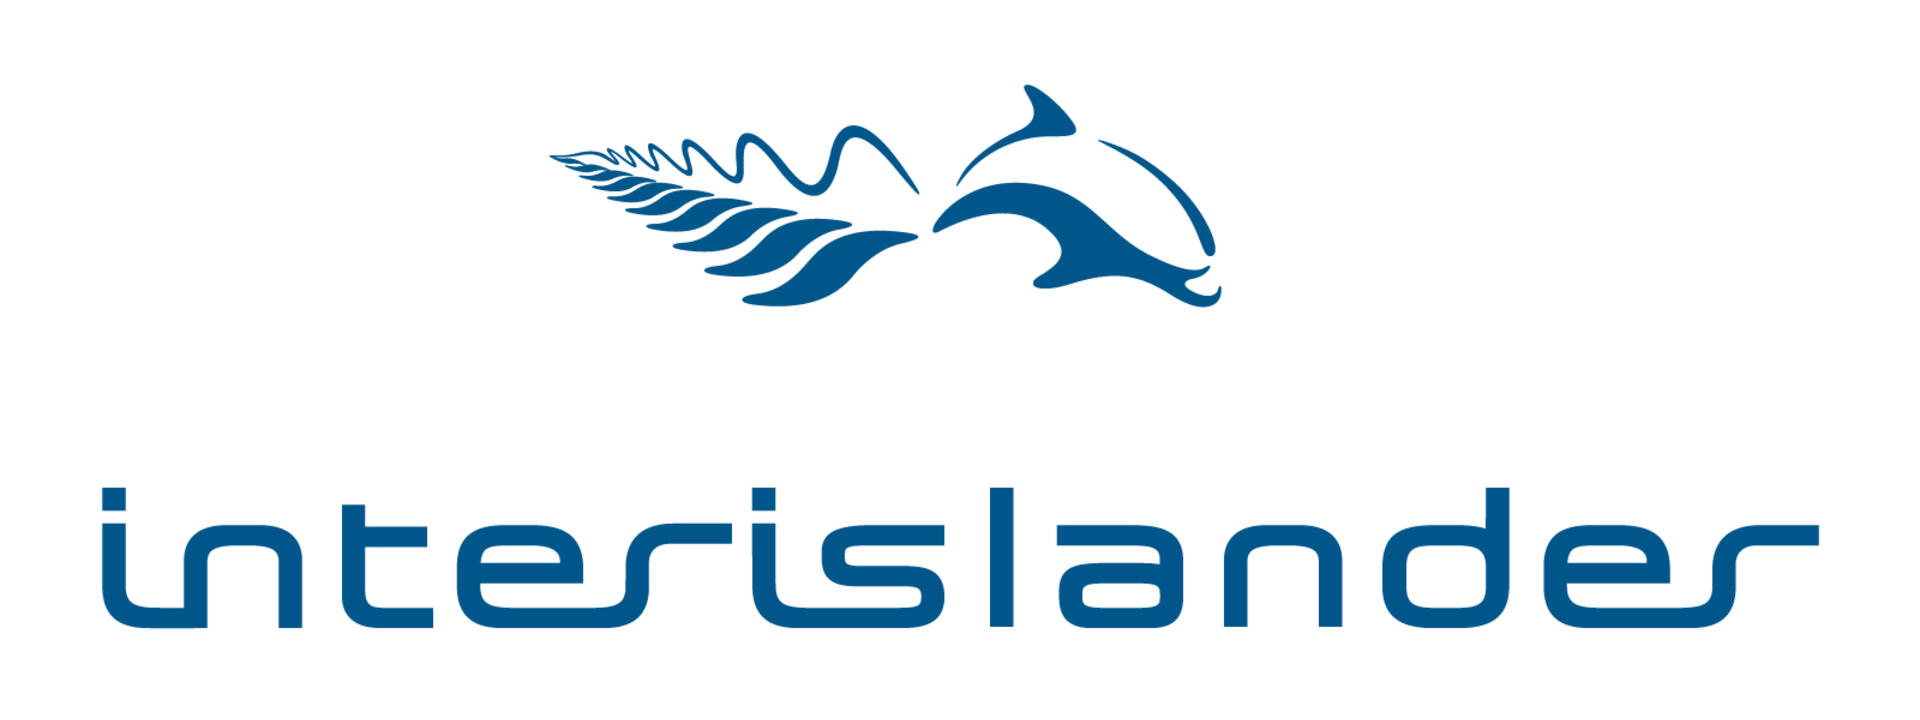 Interislander Brand Logo.jpg